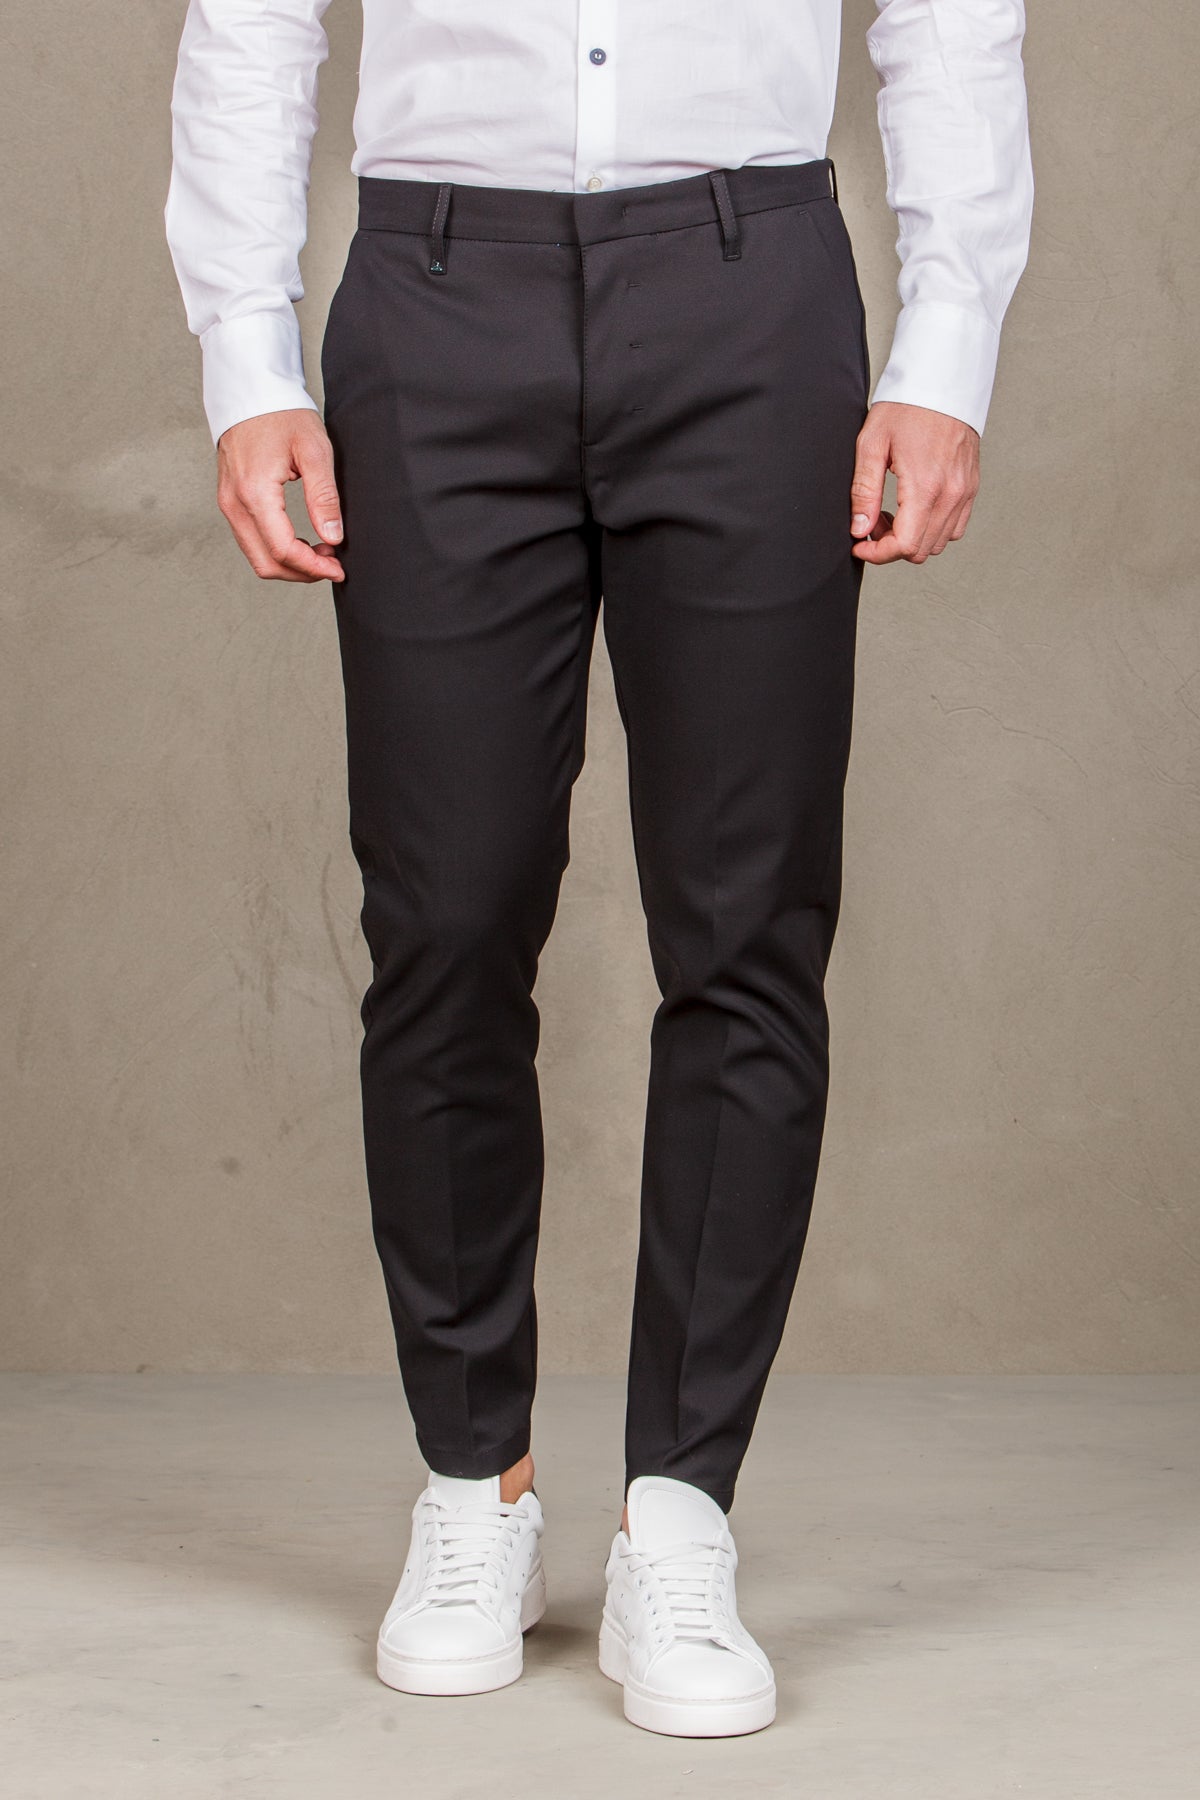 Pantalone  elegance con tasche a filetto -  nero uomo  - 2